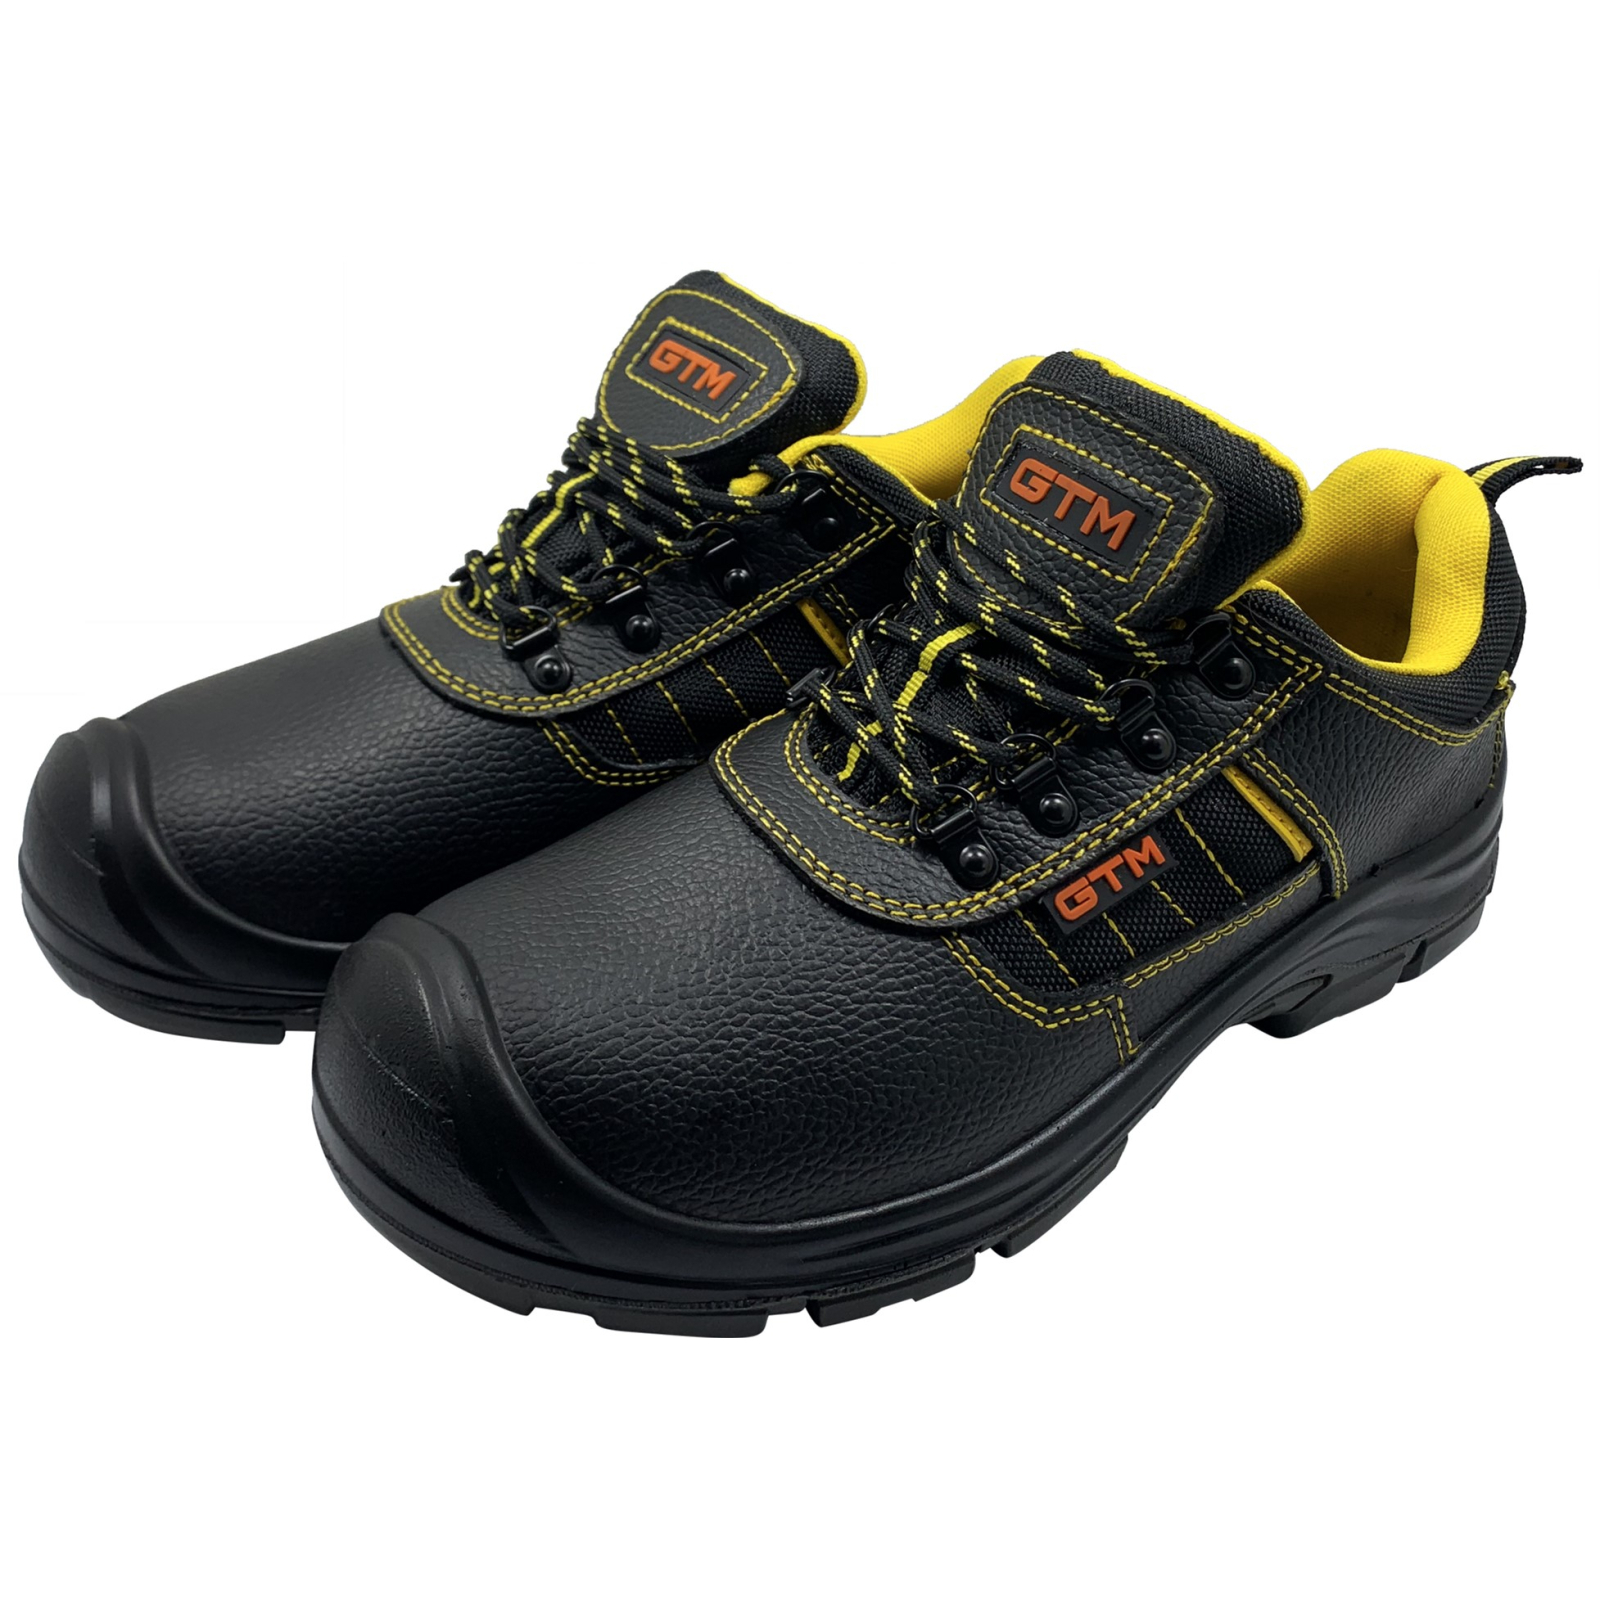 Ботинки рабочие GTM SM-078 мет. носок, р.43 с желтыми вставками (SM-078-43) изображение 3